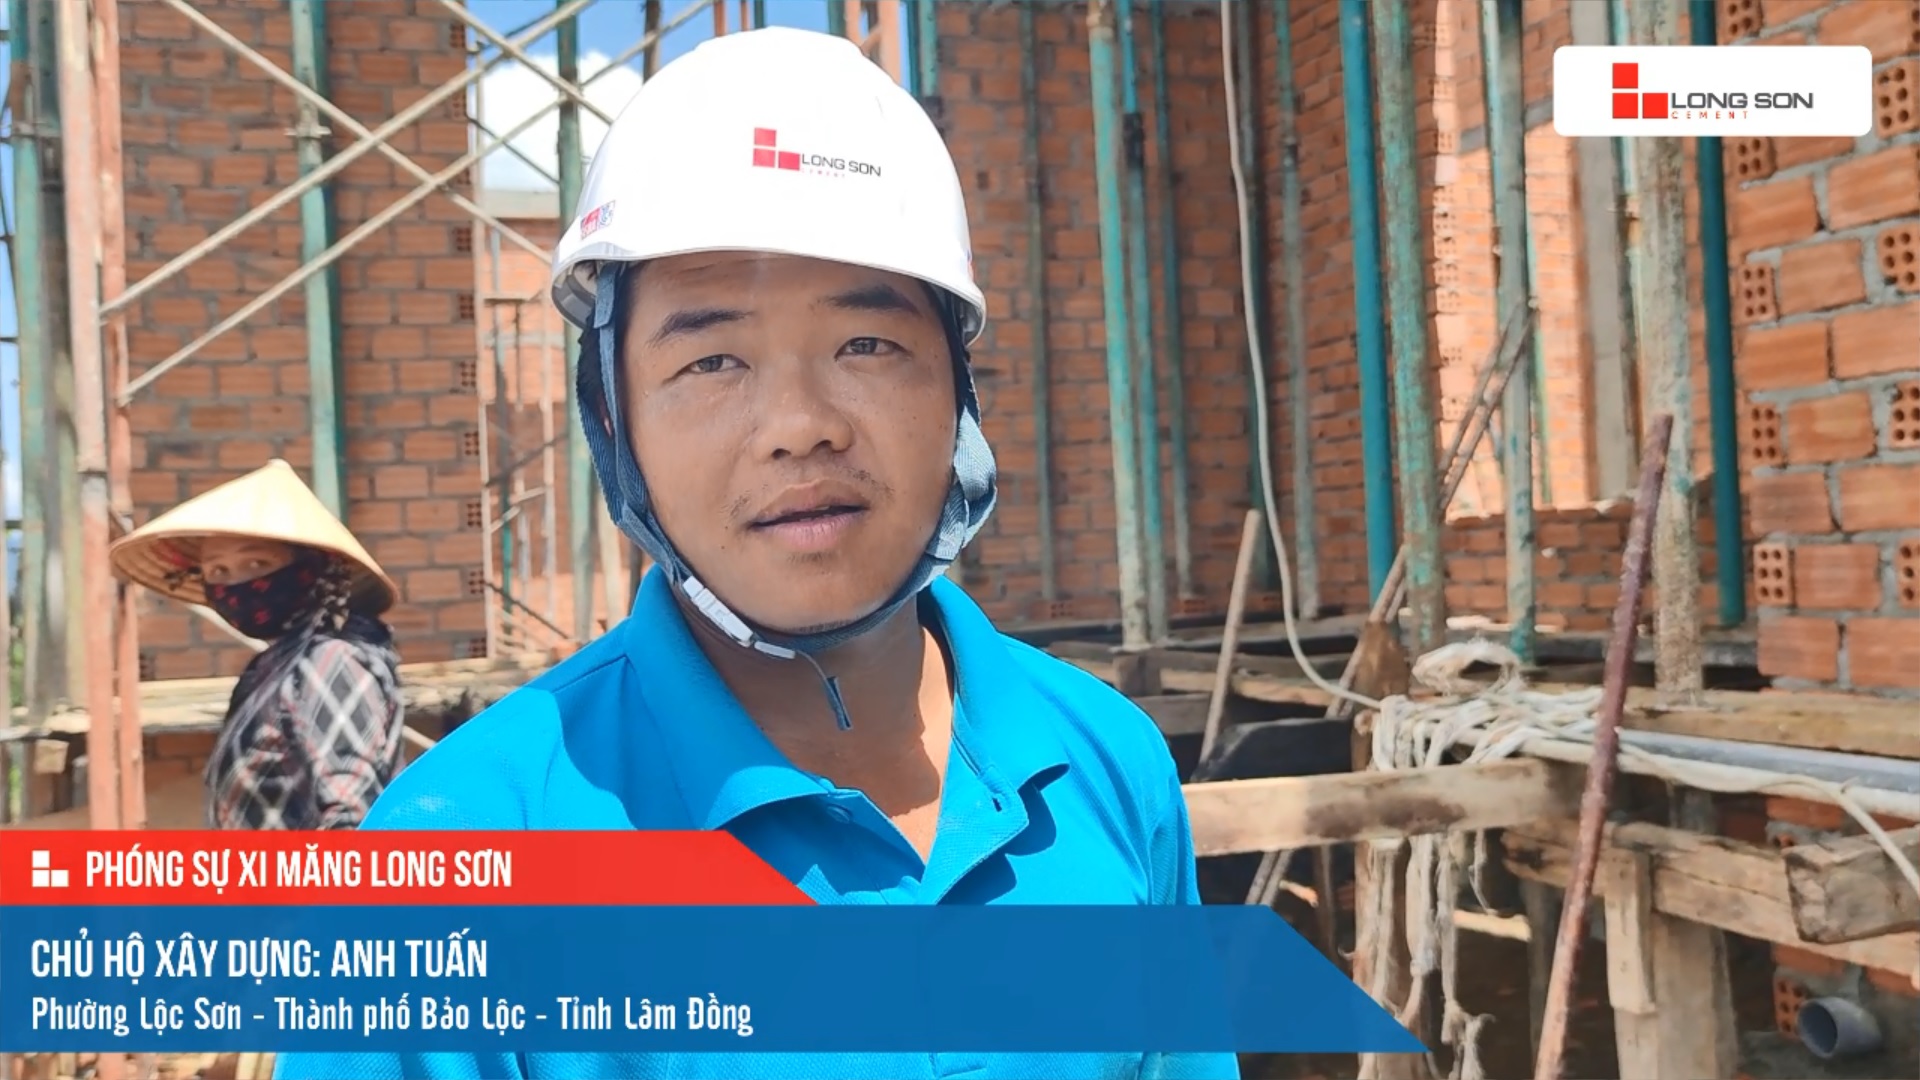 Phóng sự công trình sử dụng Xi măng Long Sơn tại Lâm Đồng 20.05.2021